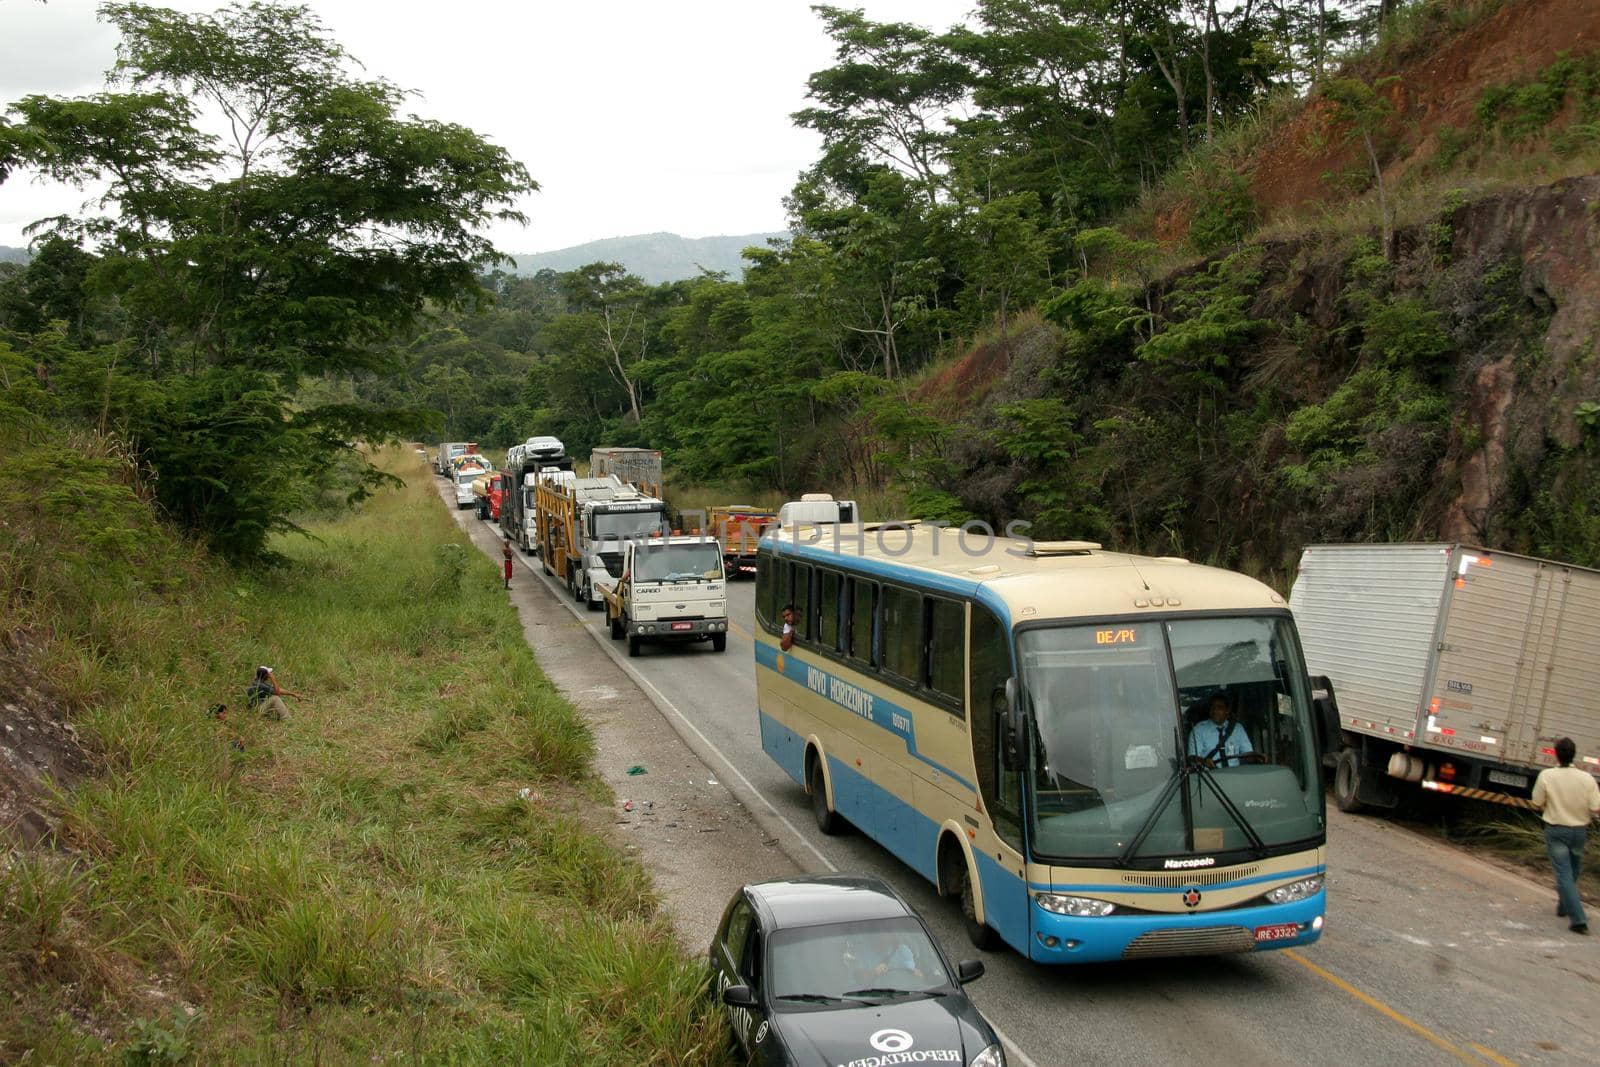 vehicle congestion on bahia highway by joasouza